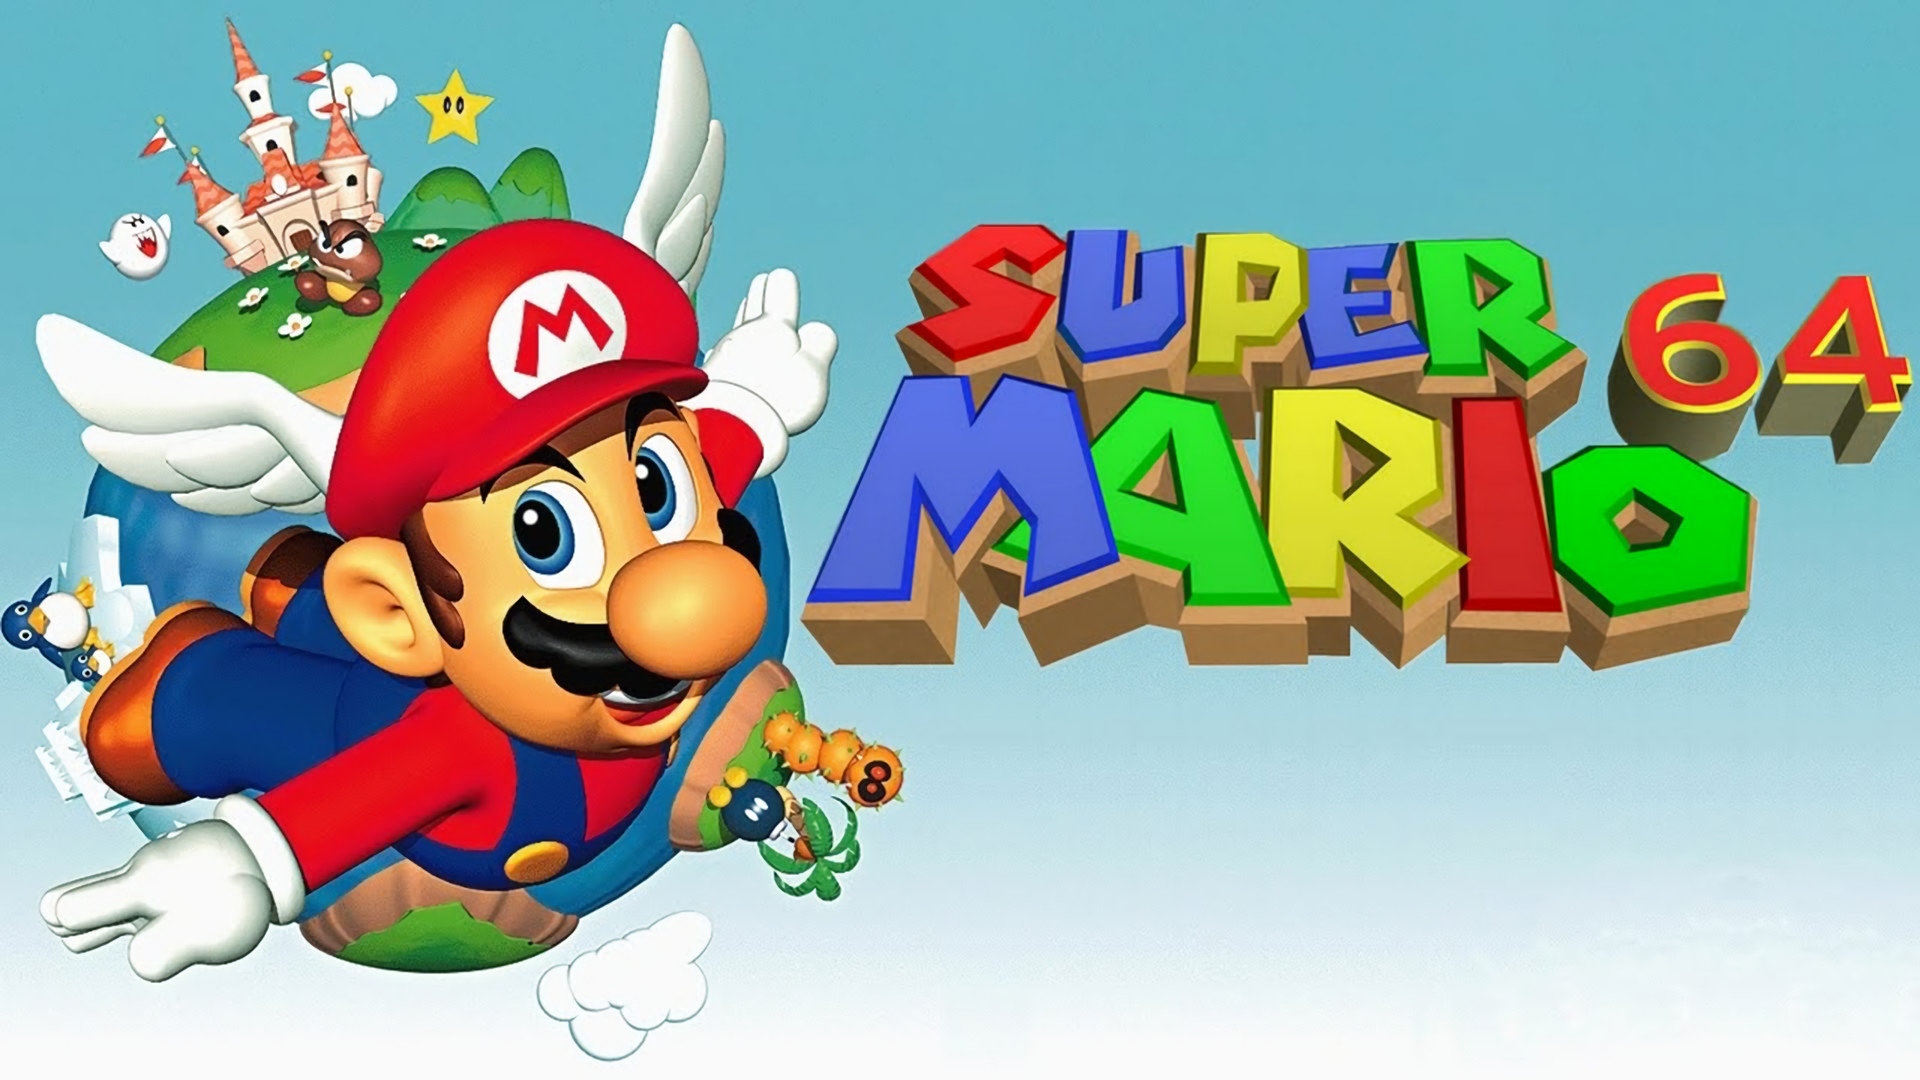 1920x1080 ... Super Mario 64 Live Wallpaper â HD Wallpaper ...